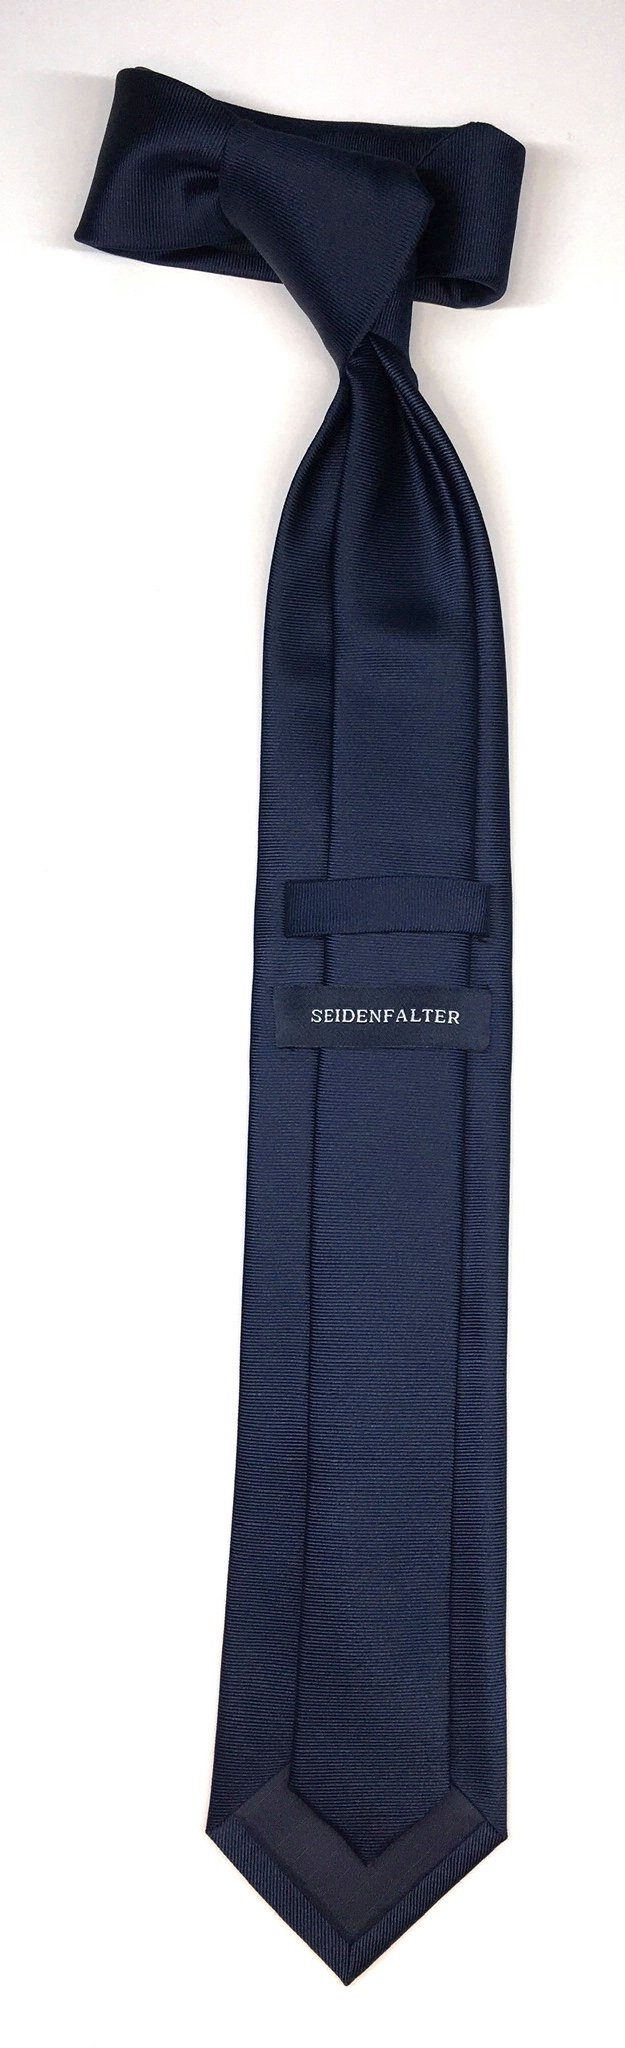 Seidenfalter Krawatte Seidenfalter 6cm Uni Krawatte Marine